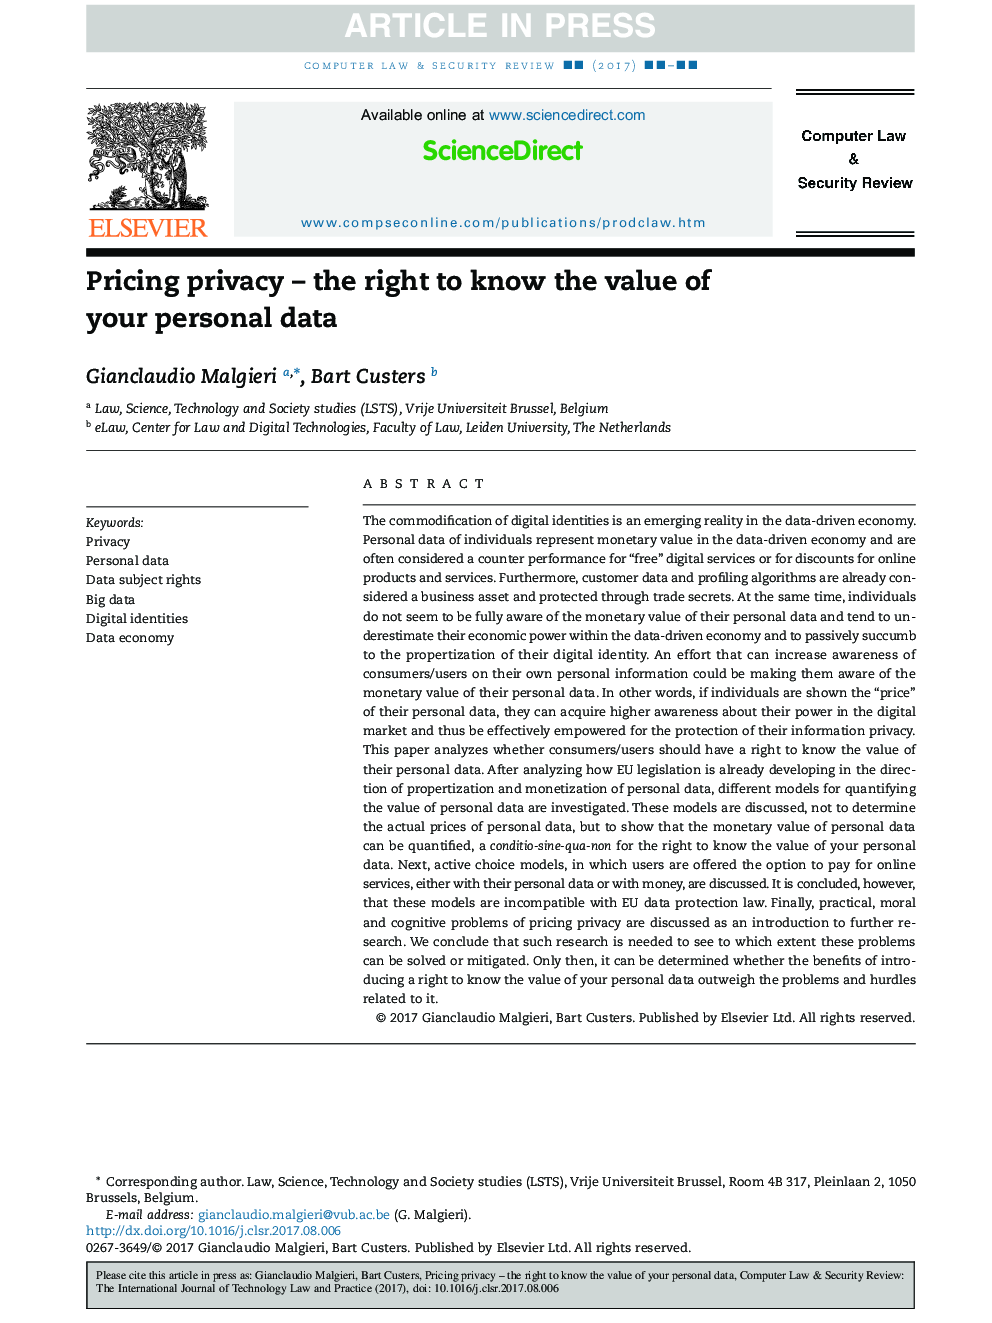 حریم خصوصی قیمت گذاری - حق شناخت ارزش اطلاعات شخصی شما 